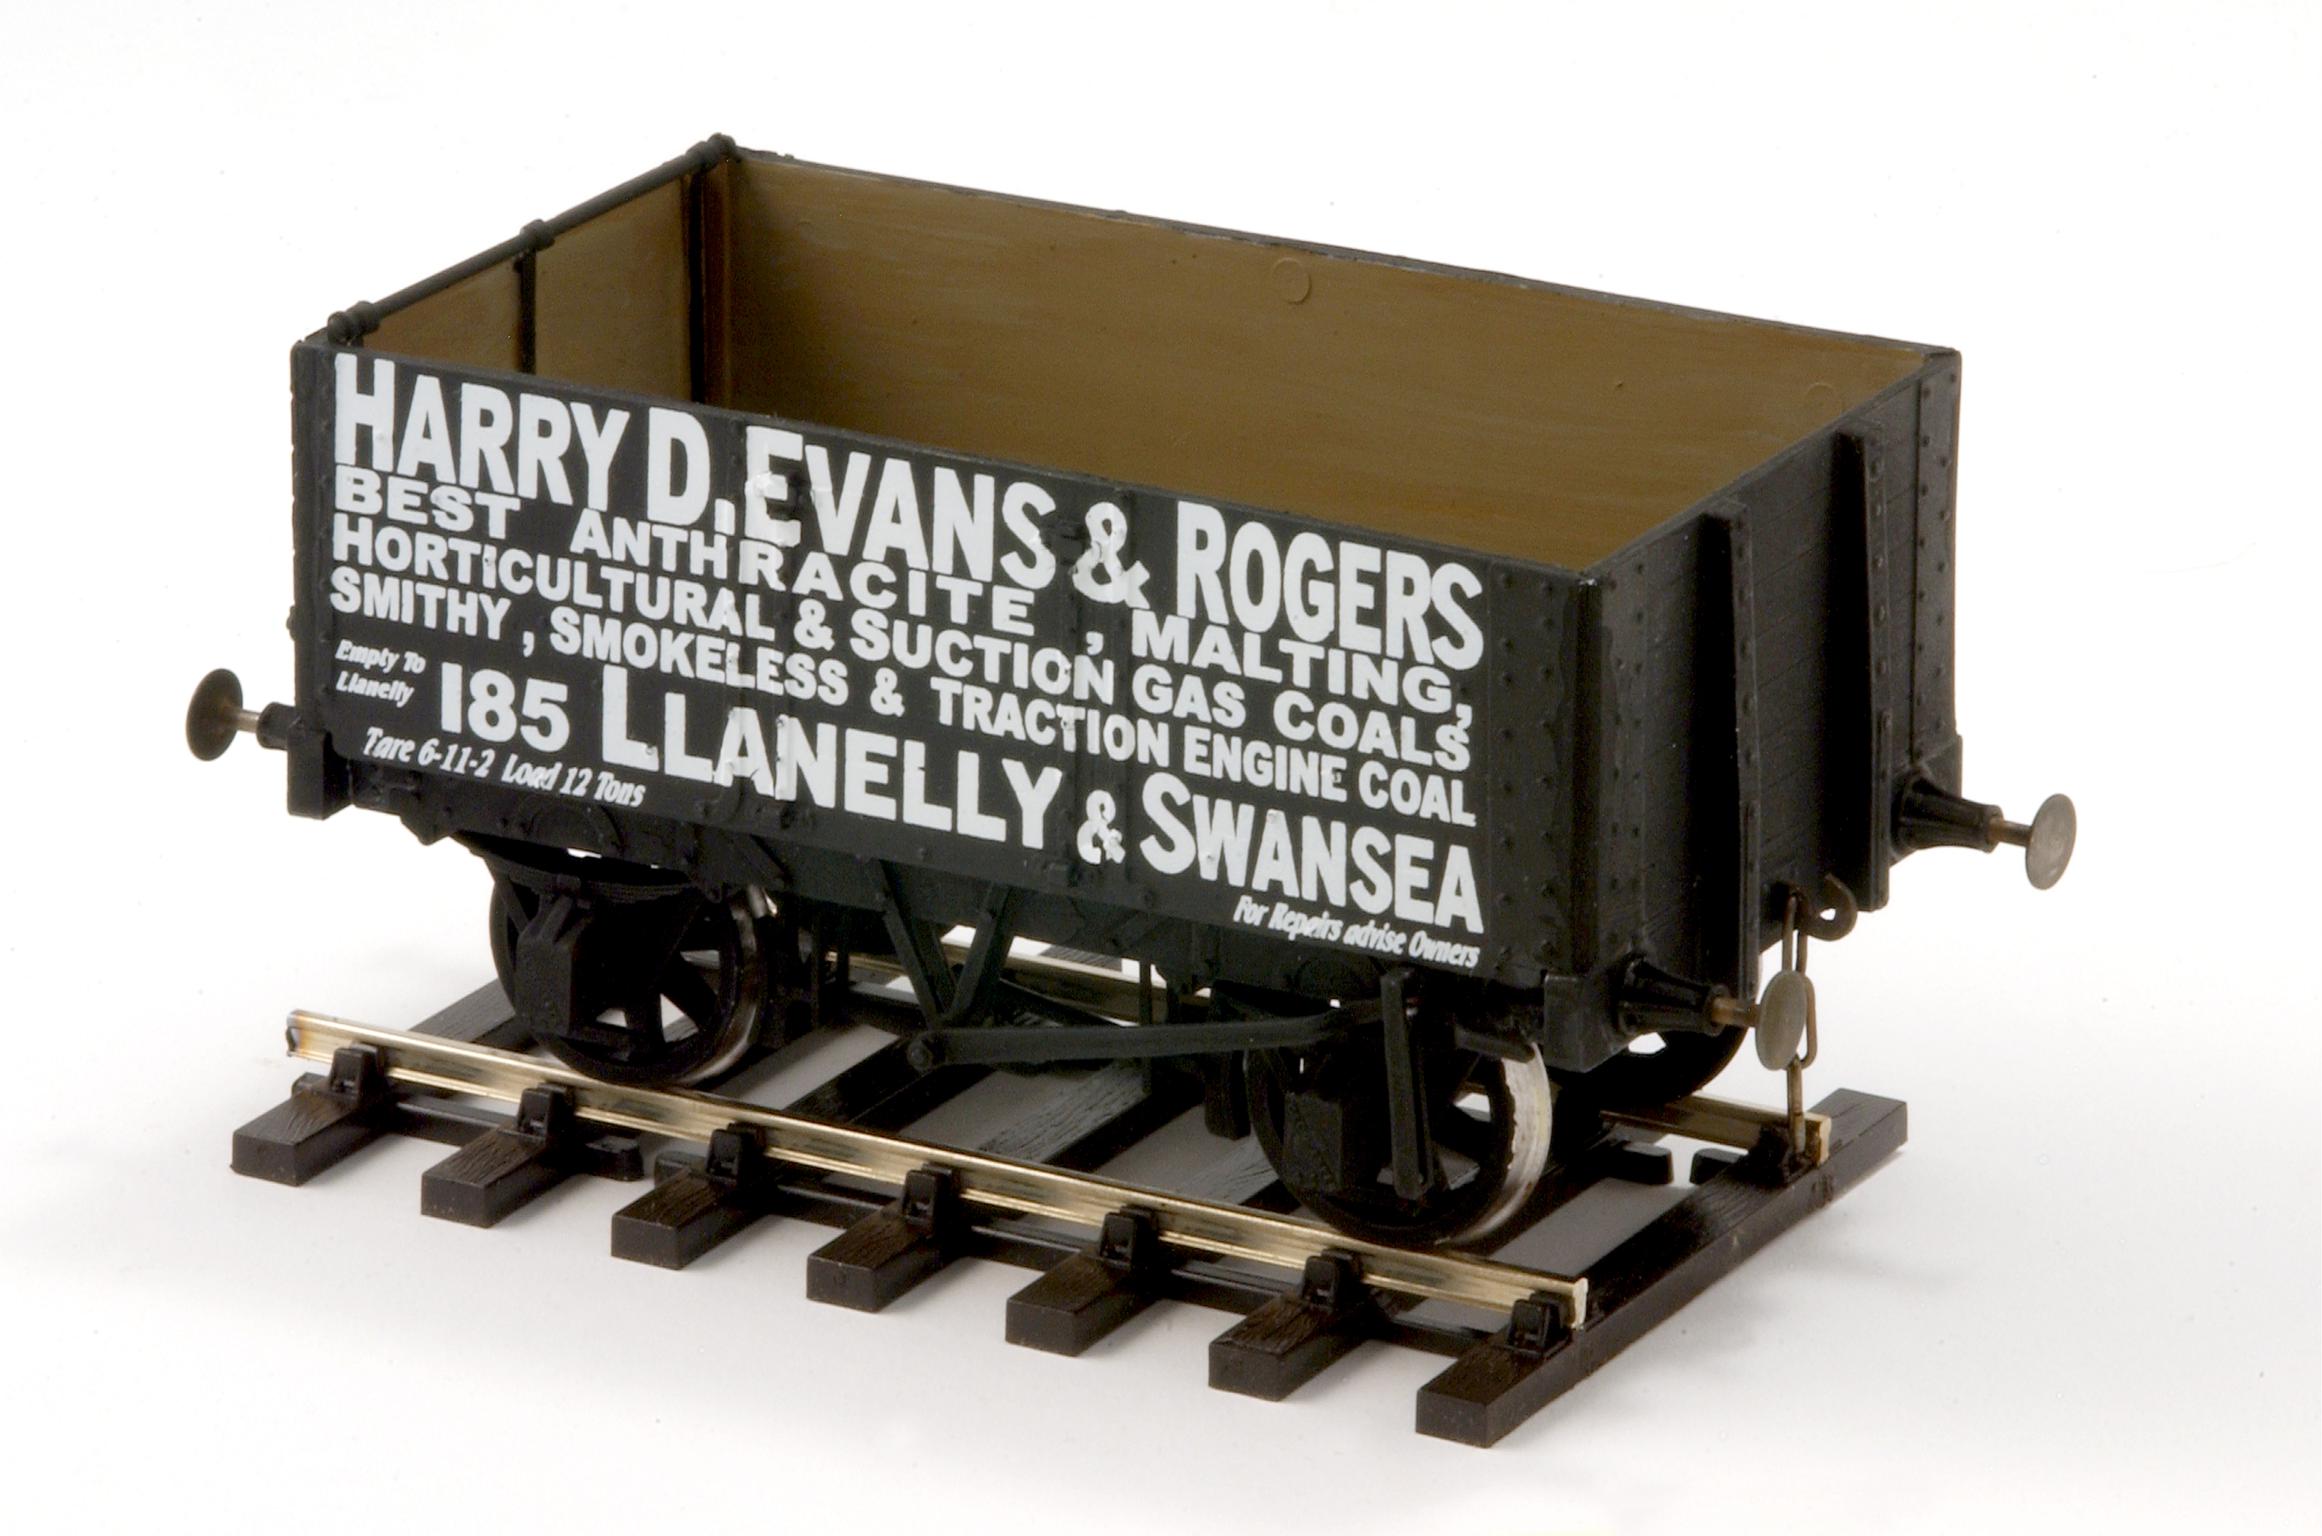 Harry D. Evans & Rogers, coal wagon model